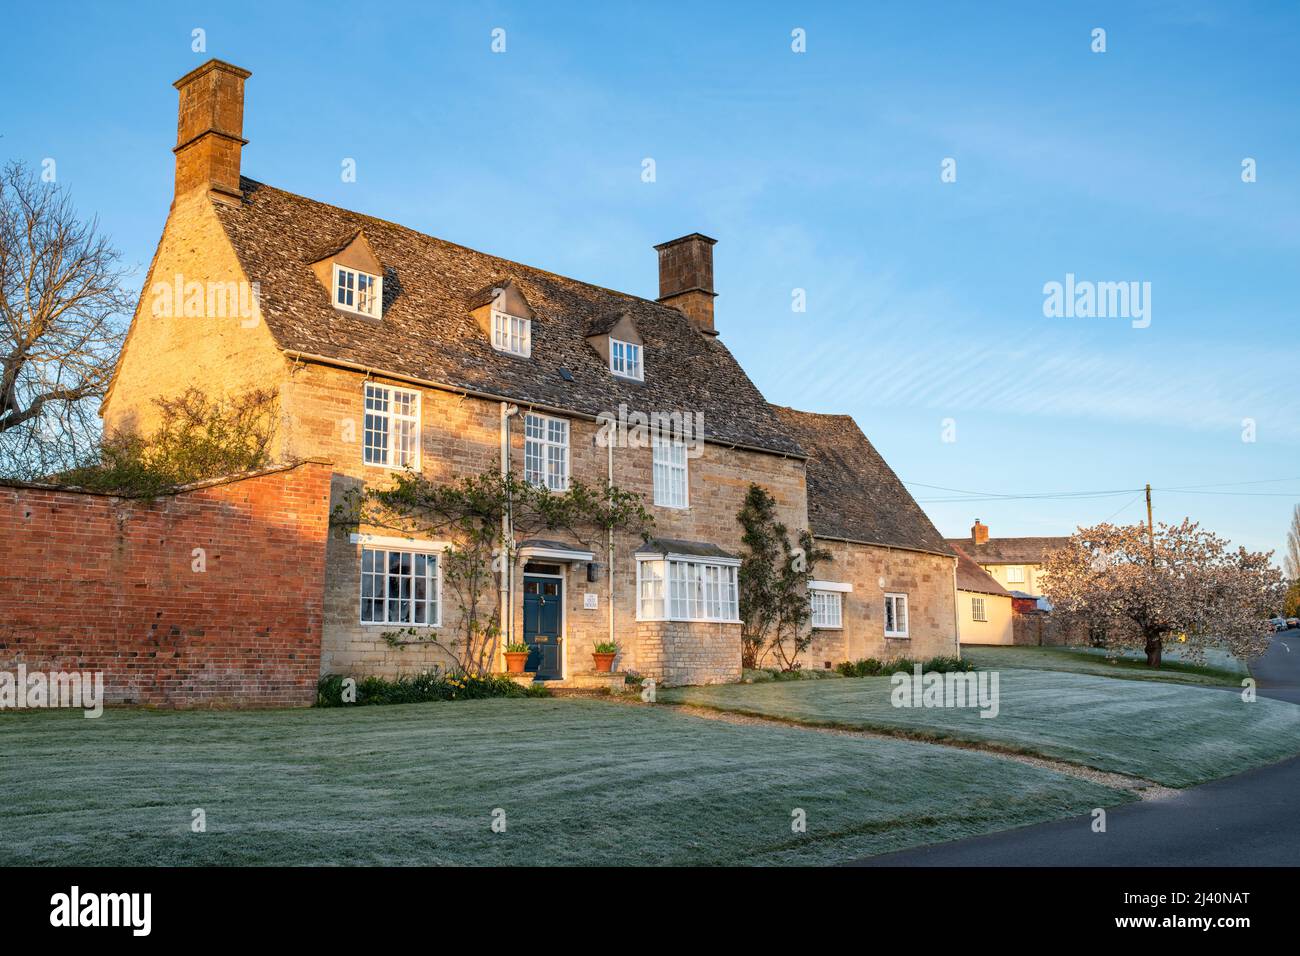 Large house at sunrise on a frosty spring morning. Tredington, Warwickshire, England. Stock Photo